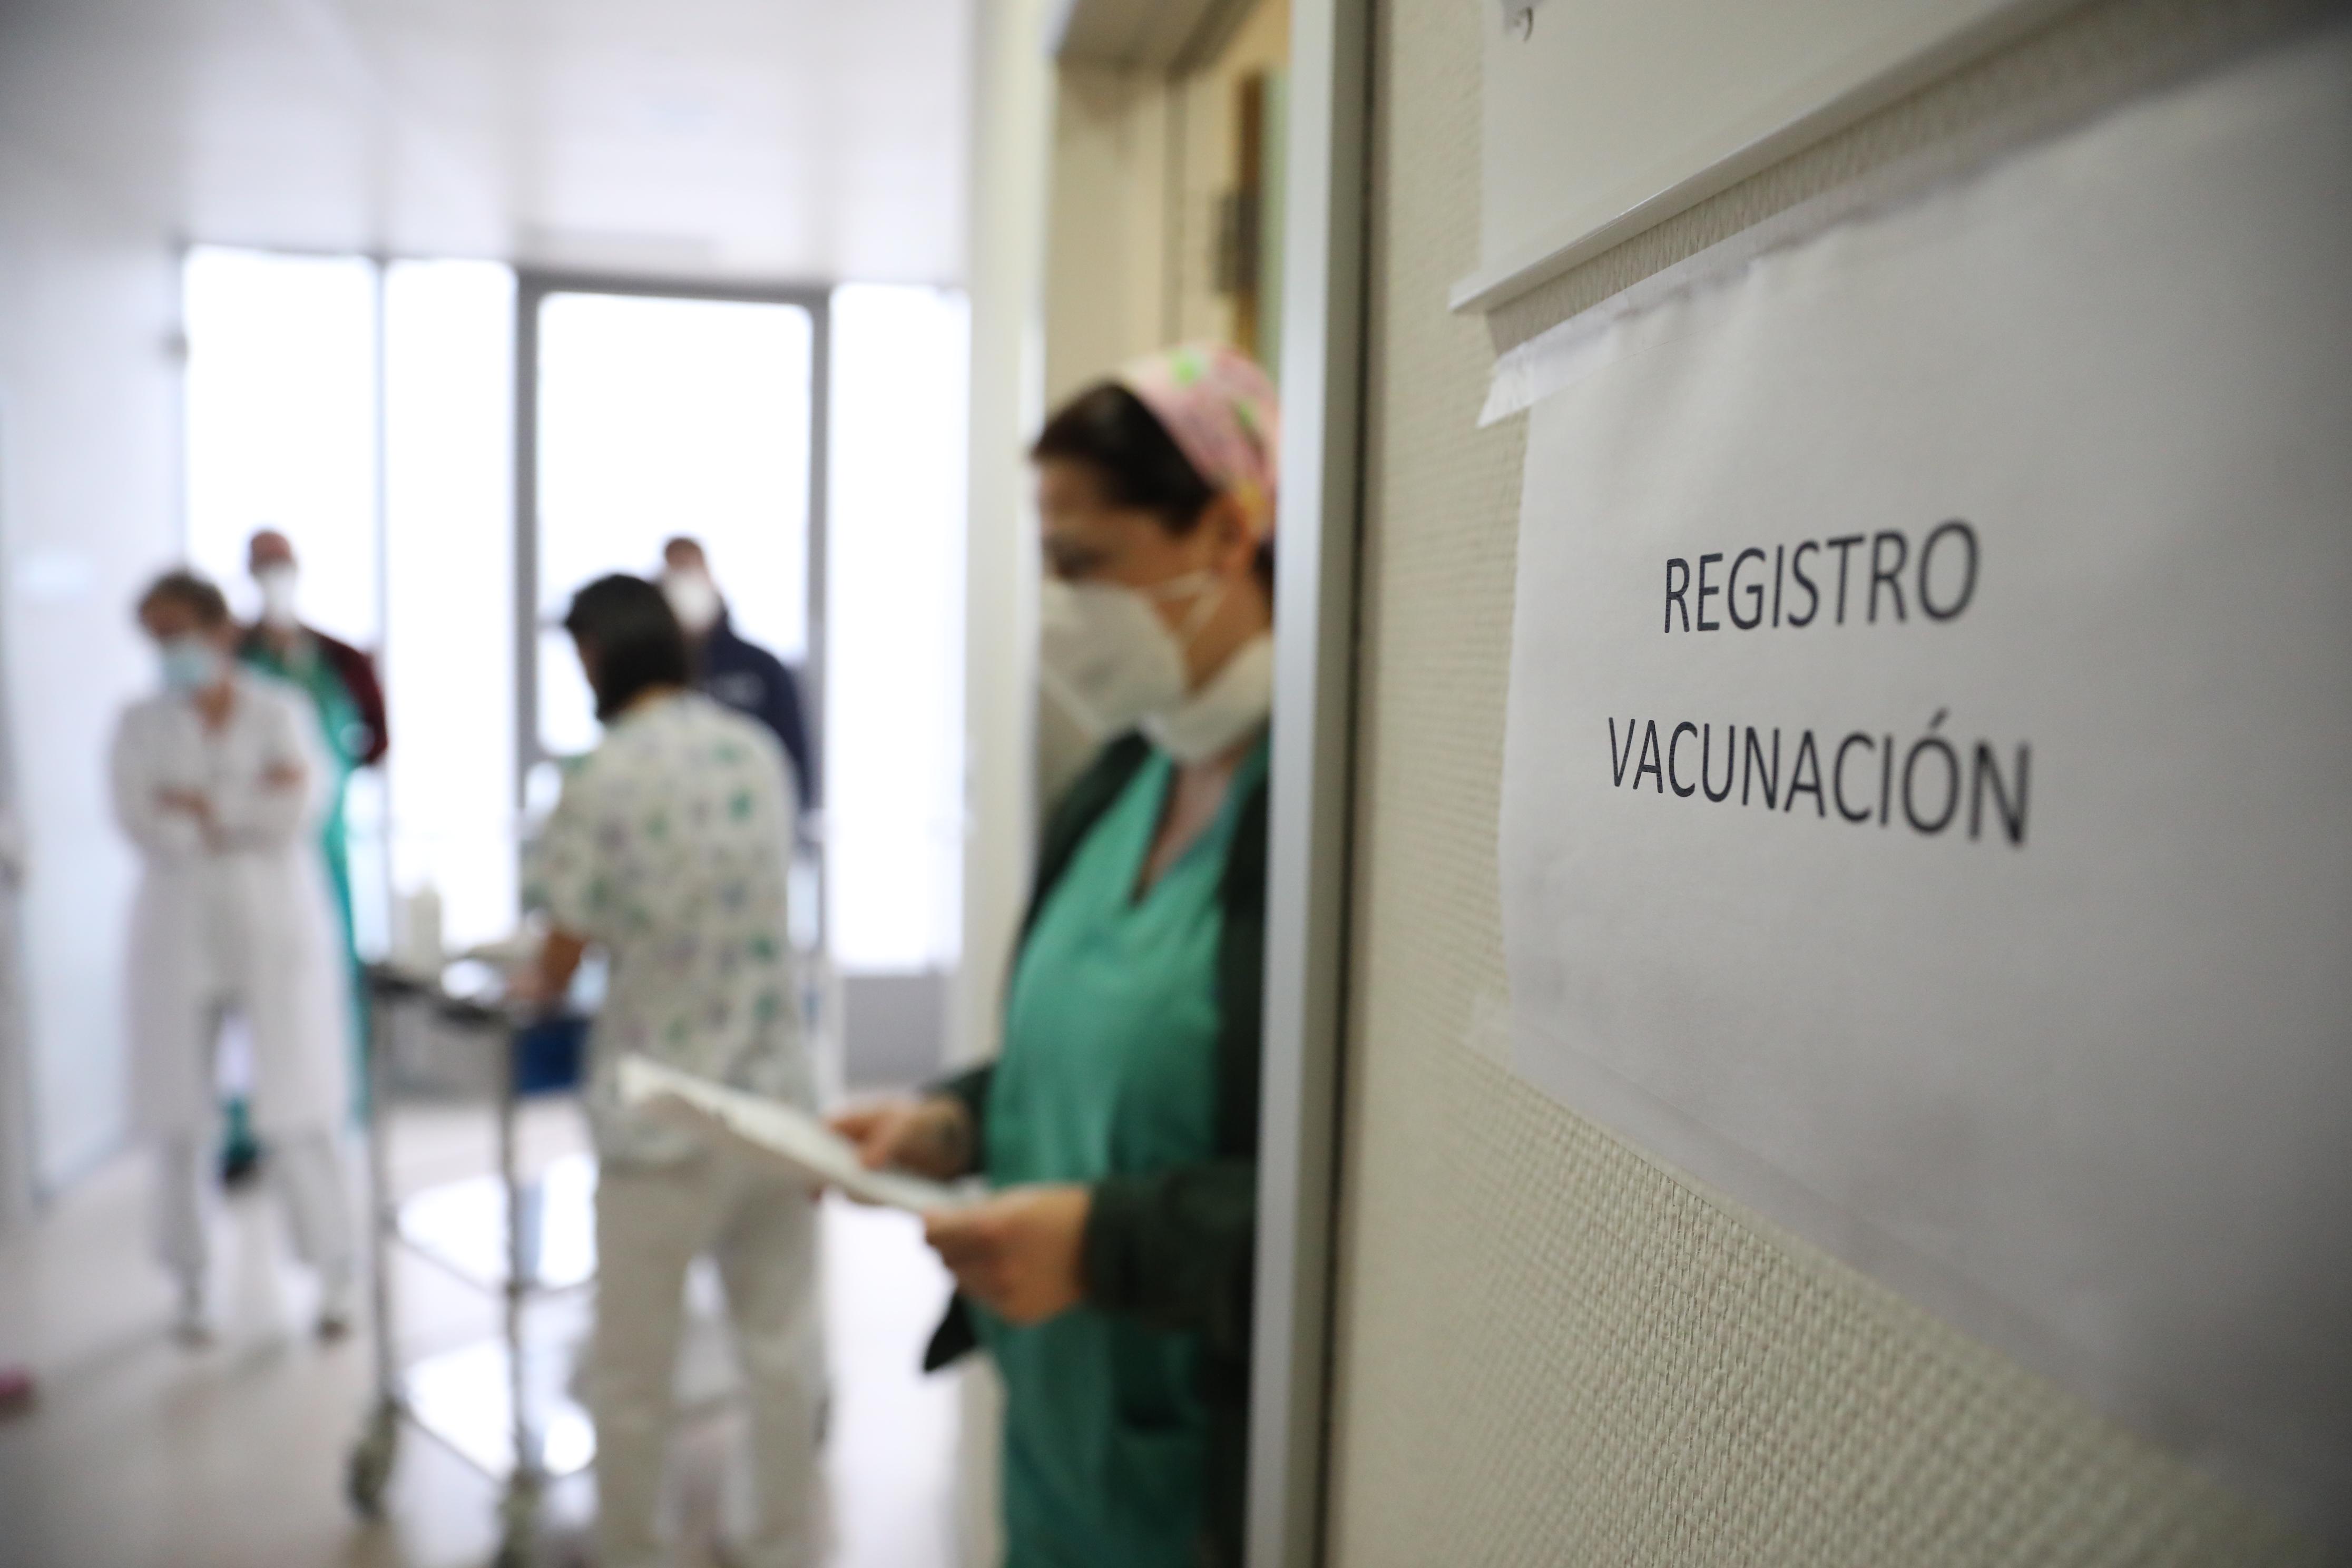 Trabajadores sanitarios en la sala de registro de vacunación para inyectar la vacuna de Pfizer-BioNTech contra la Covid-19. EP